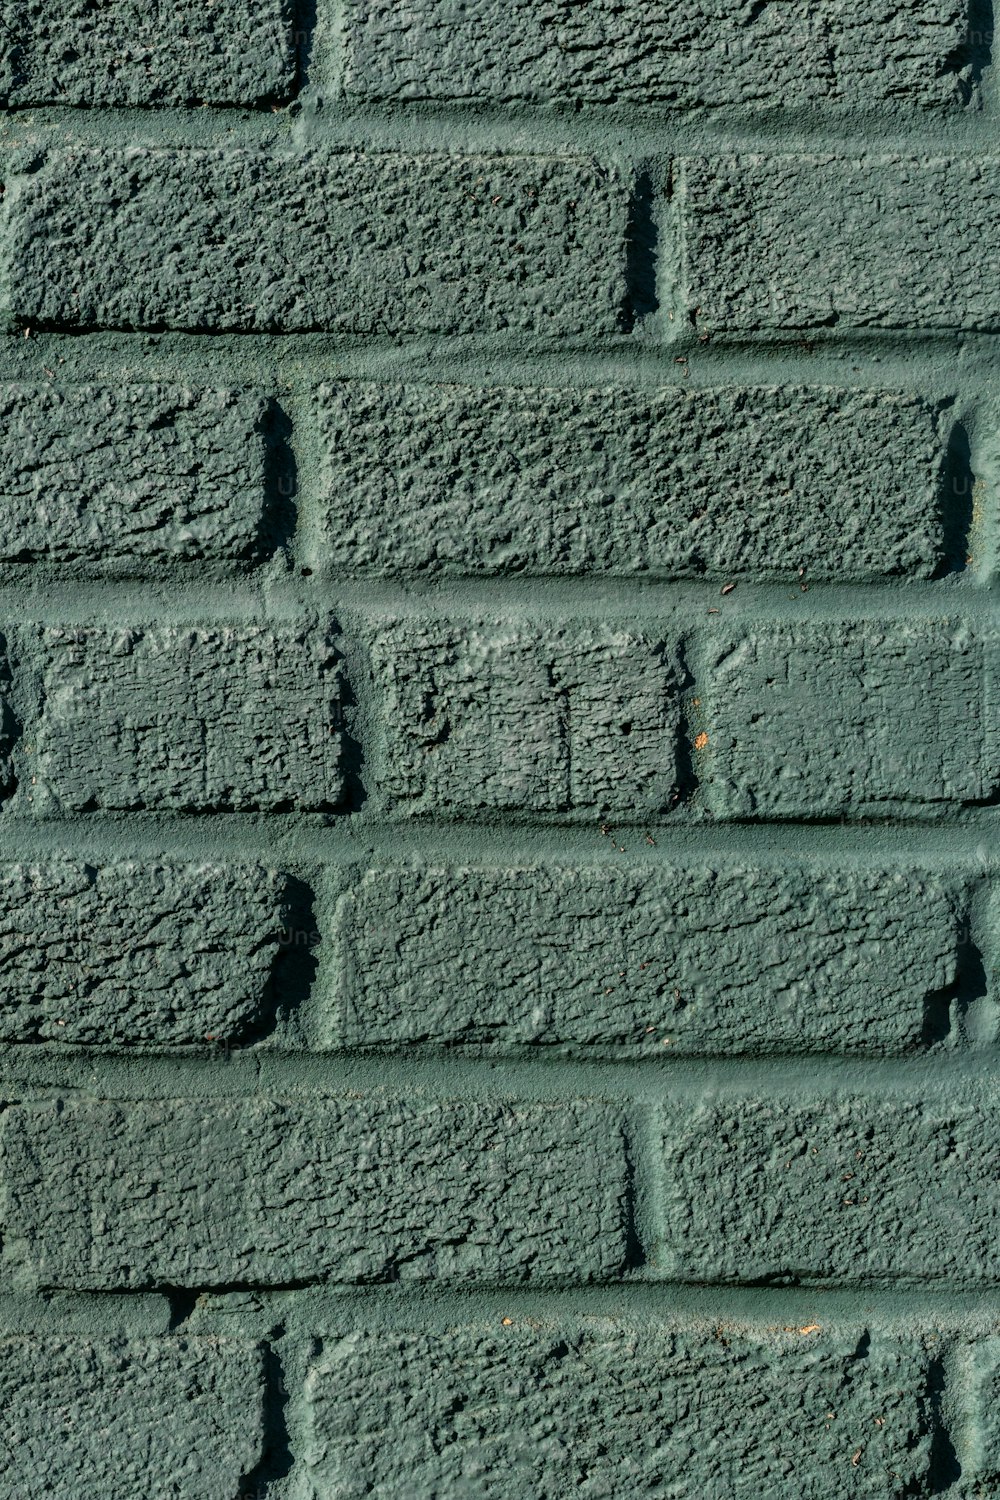 a close up of a green brick wall